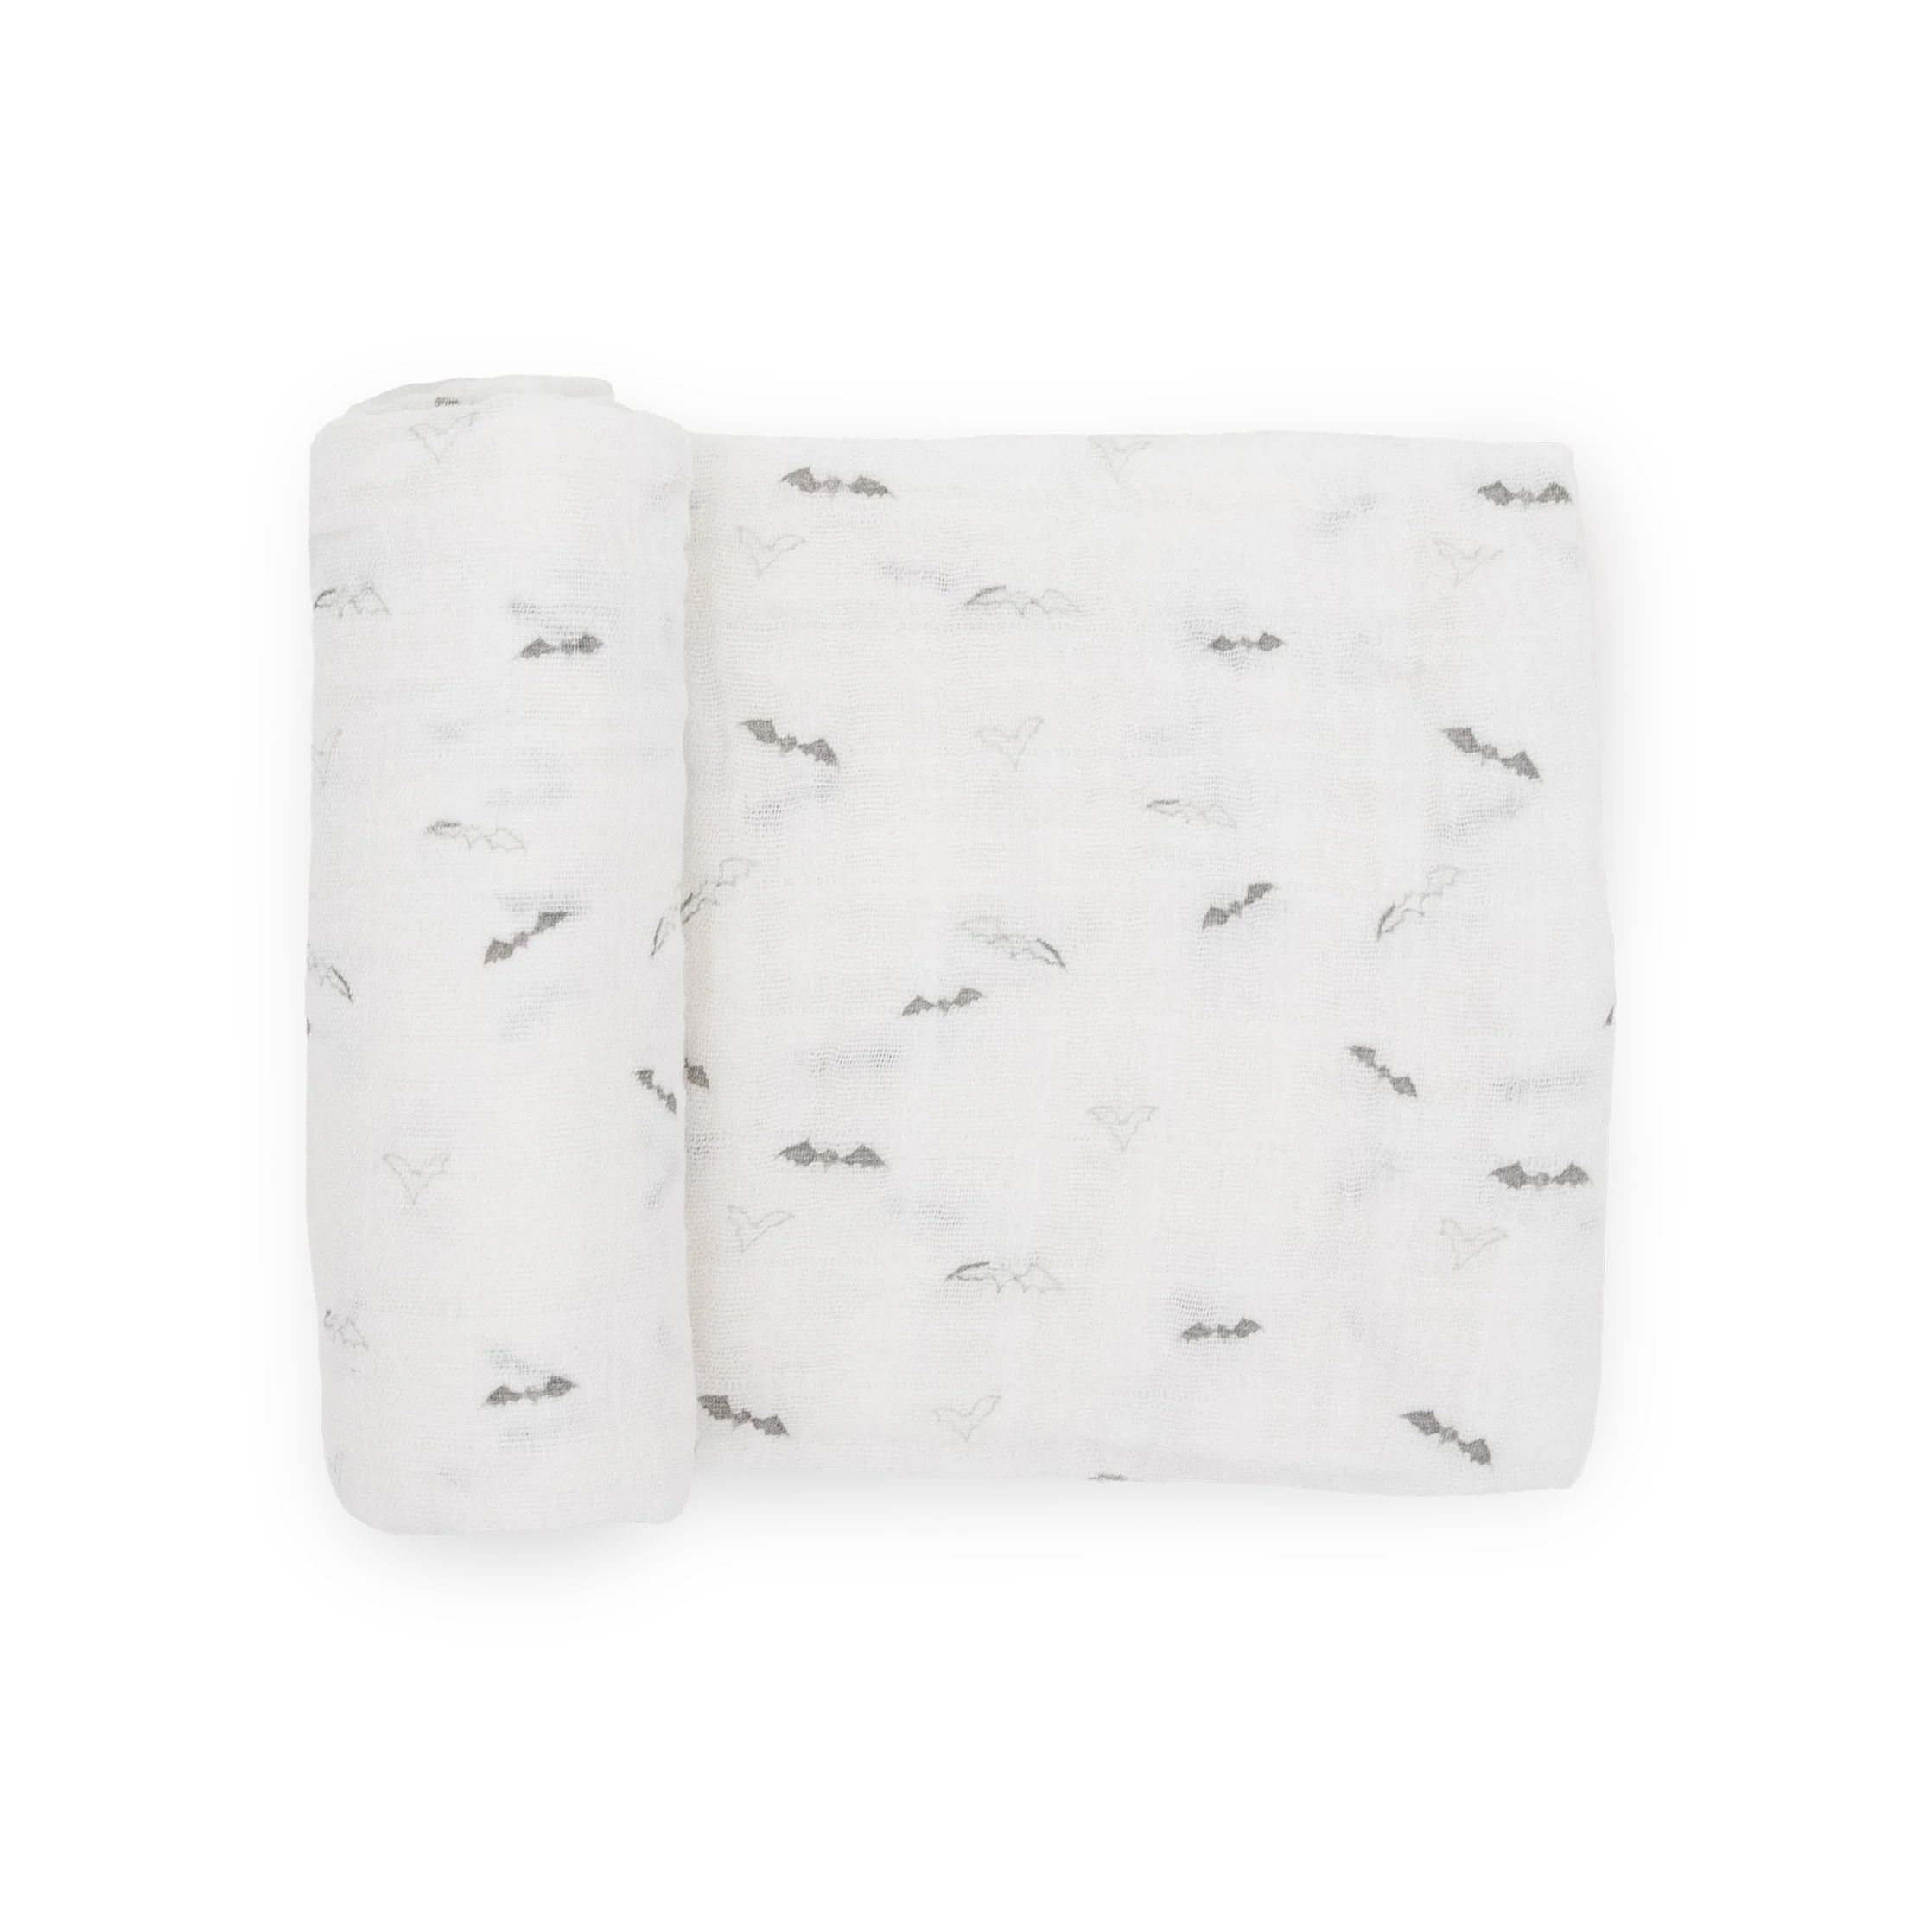 Cotton Muslin Swaddle Blanket - Bats | Little Unicorn